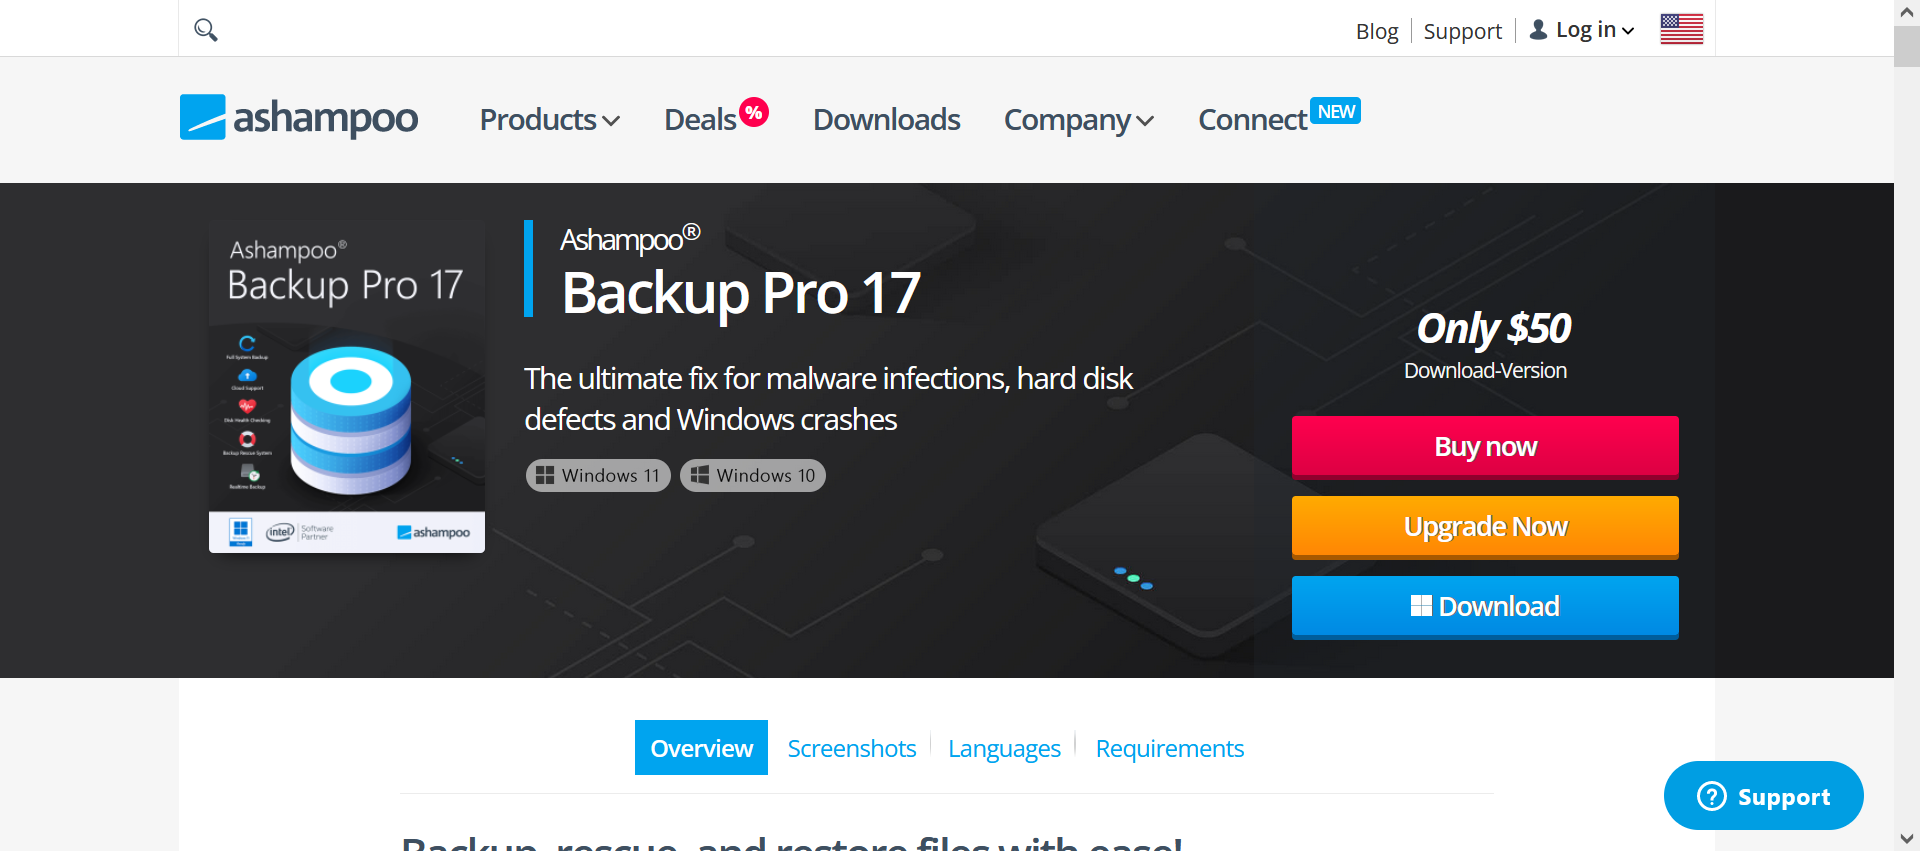 Servizi cloud compatibili con Ashampoo Backup Pro 17